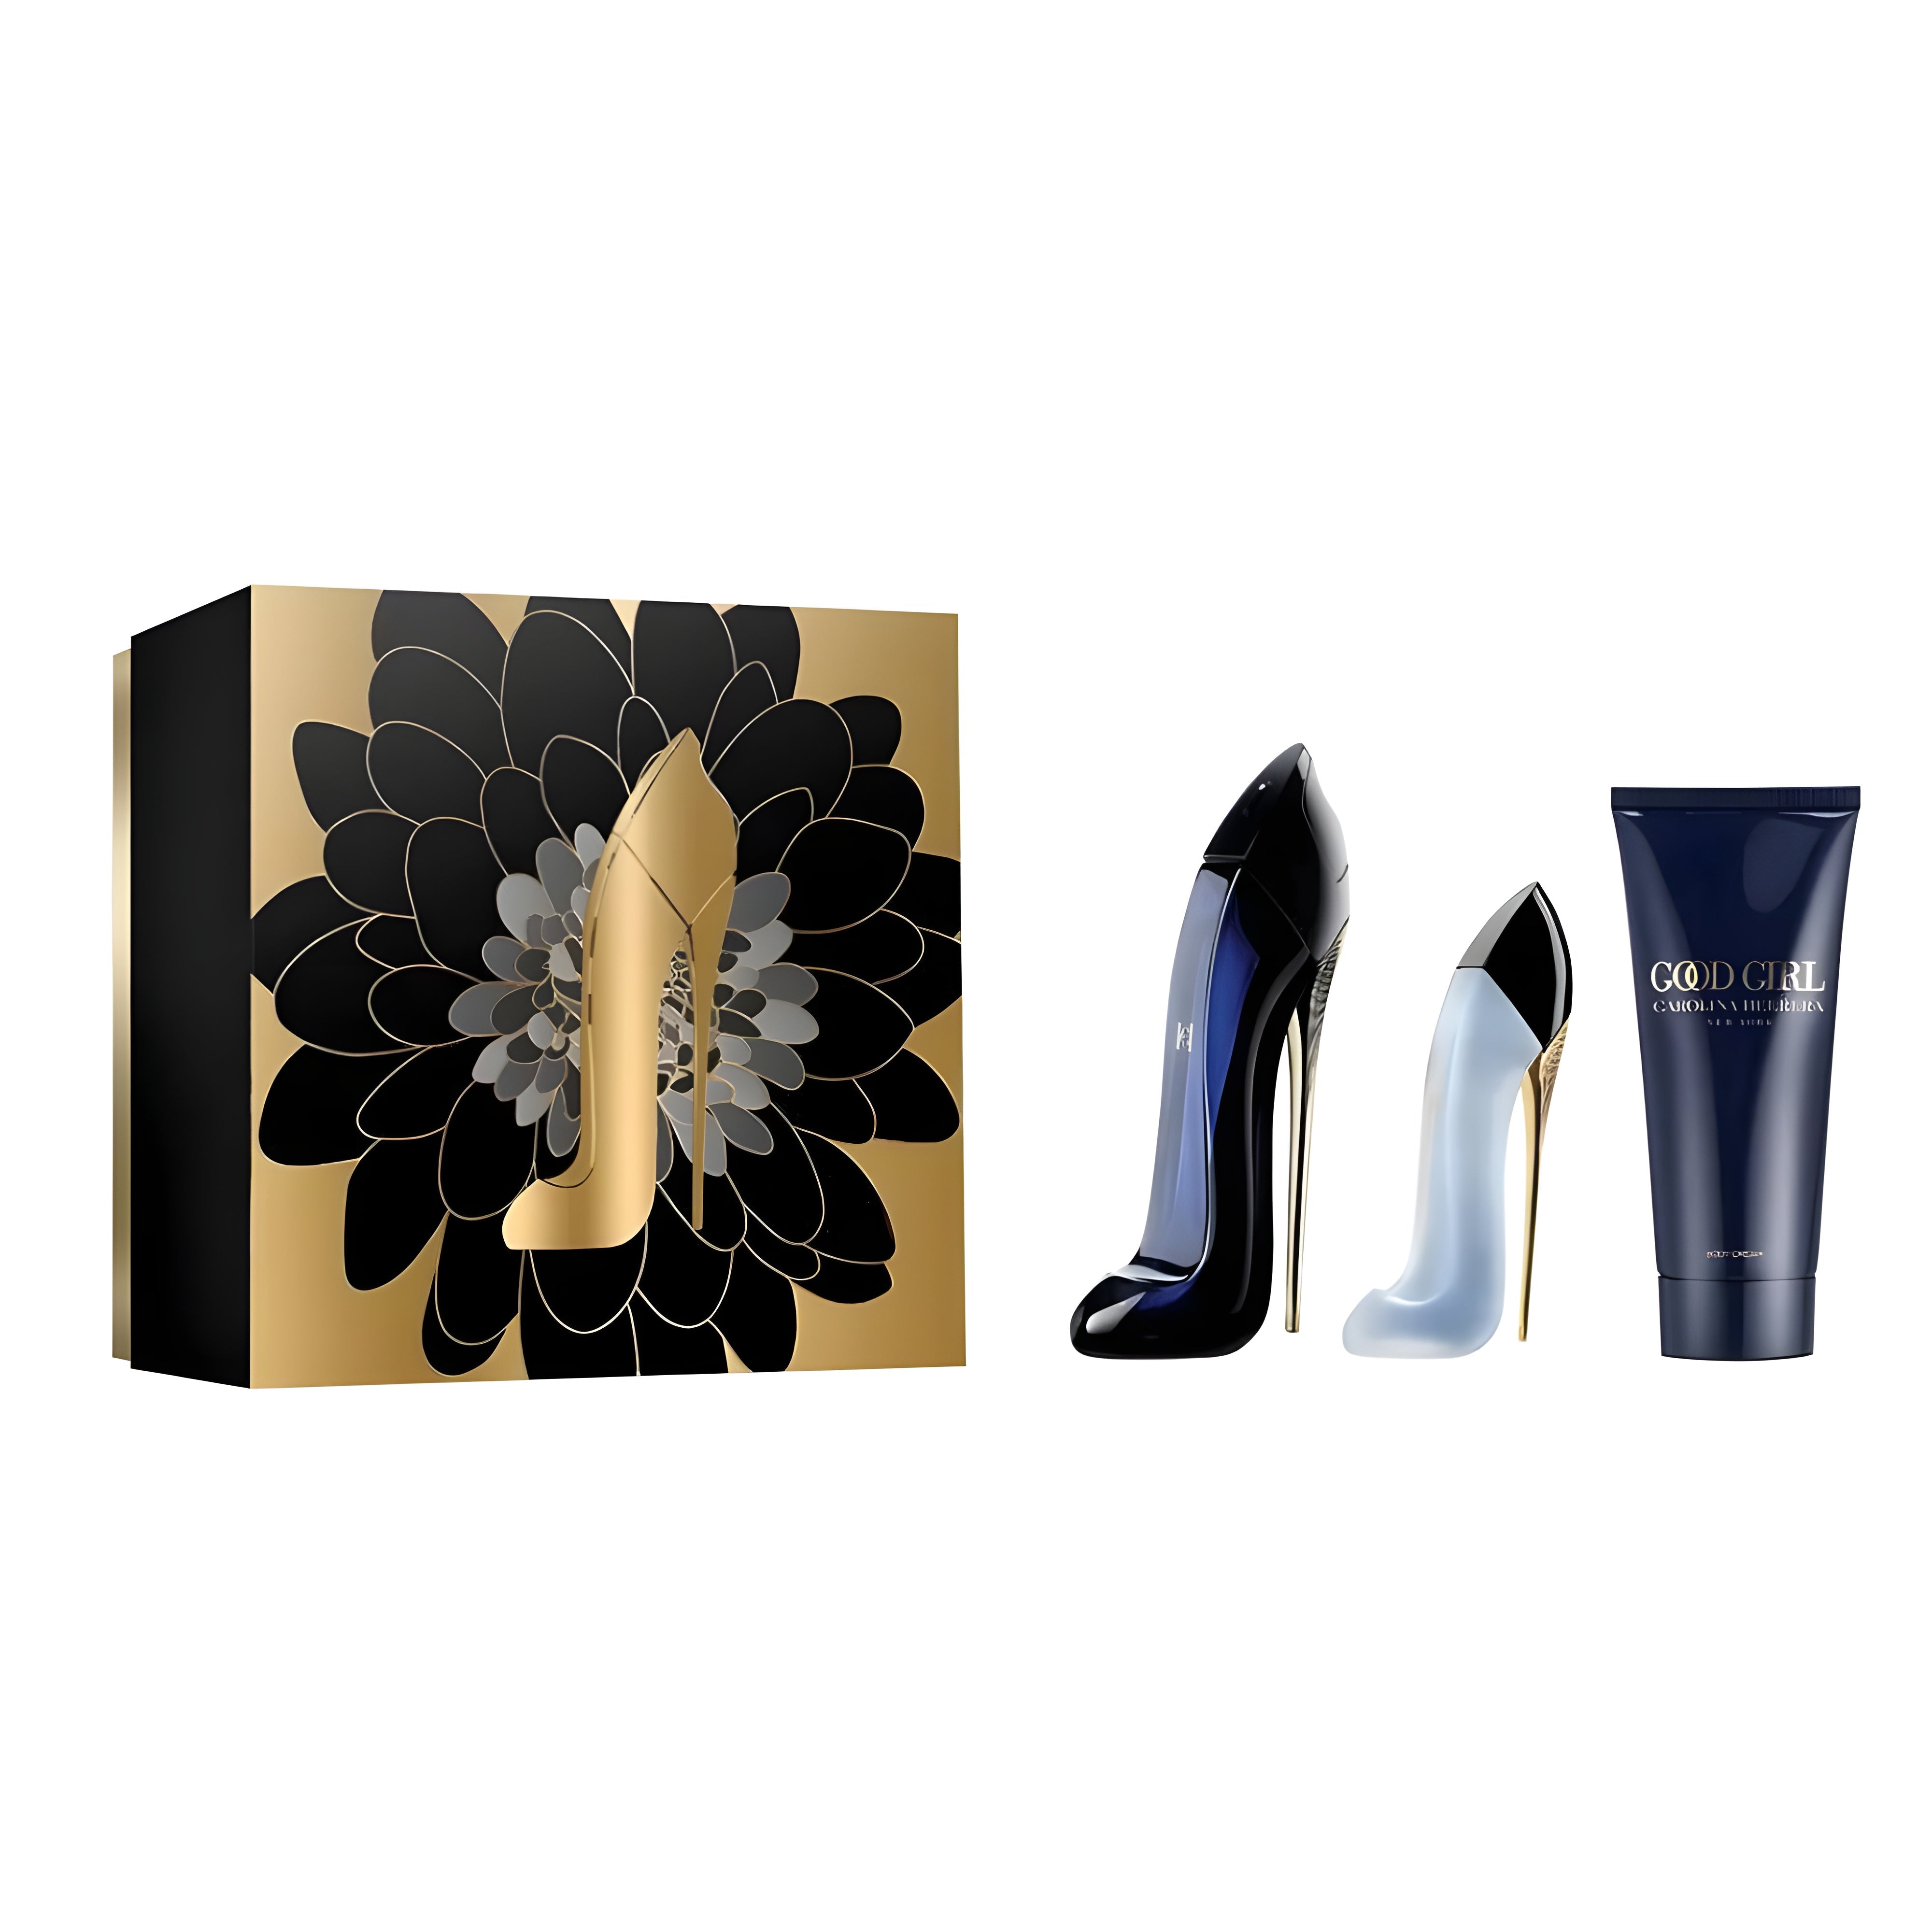 Carolina Herrera Good Girl EDP Deluxe Set | My Perfume Shop Australia